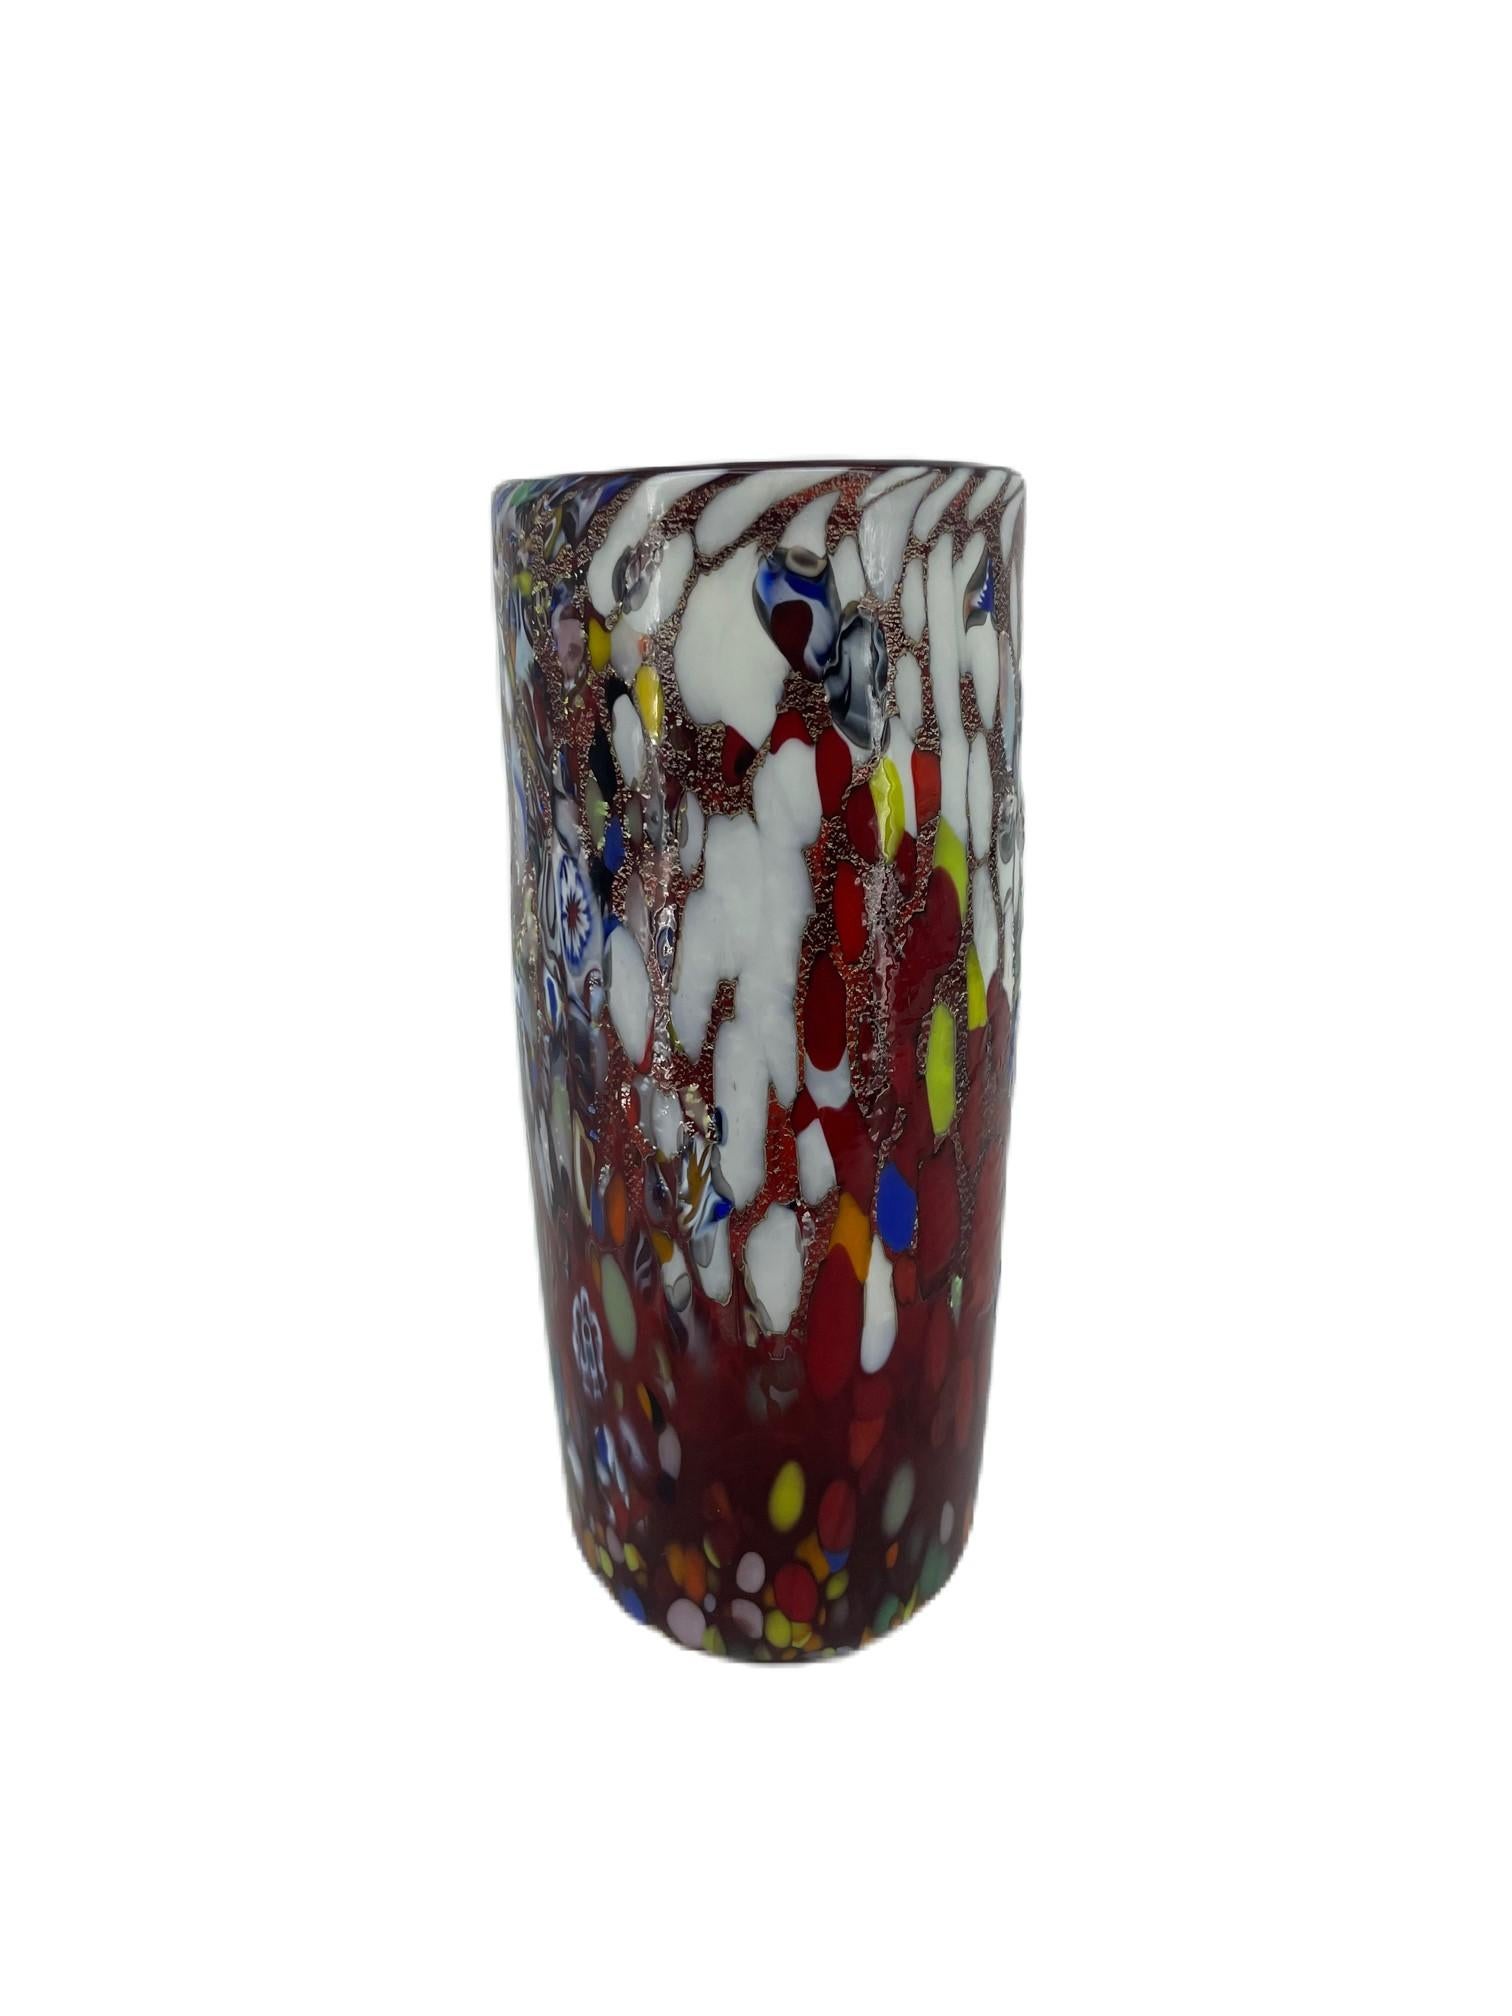 Vase aus der 'Fantasy'-Kollektion aus rotem geblasenem Murano-Glas mit verschiedenen Dekorationen aus mehrfarbigem Glas 'Mace', Murrina Millefiori und Blattsilber.
Die Vase wurde vom Murano-Glasmachermeister Imperio Rossi handgefertigt.
Original